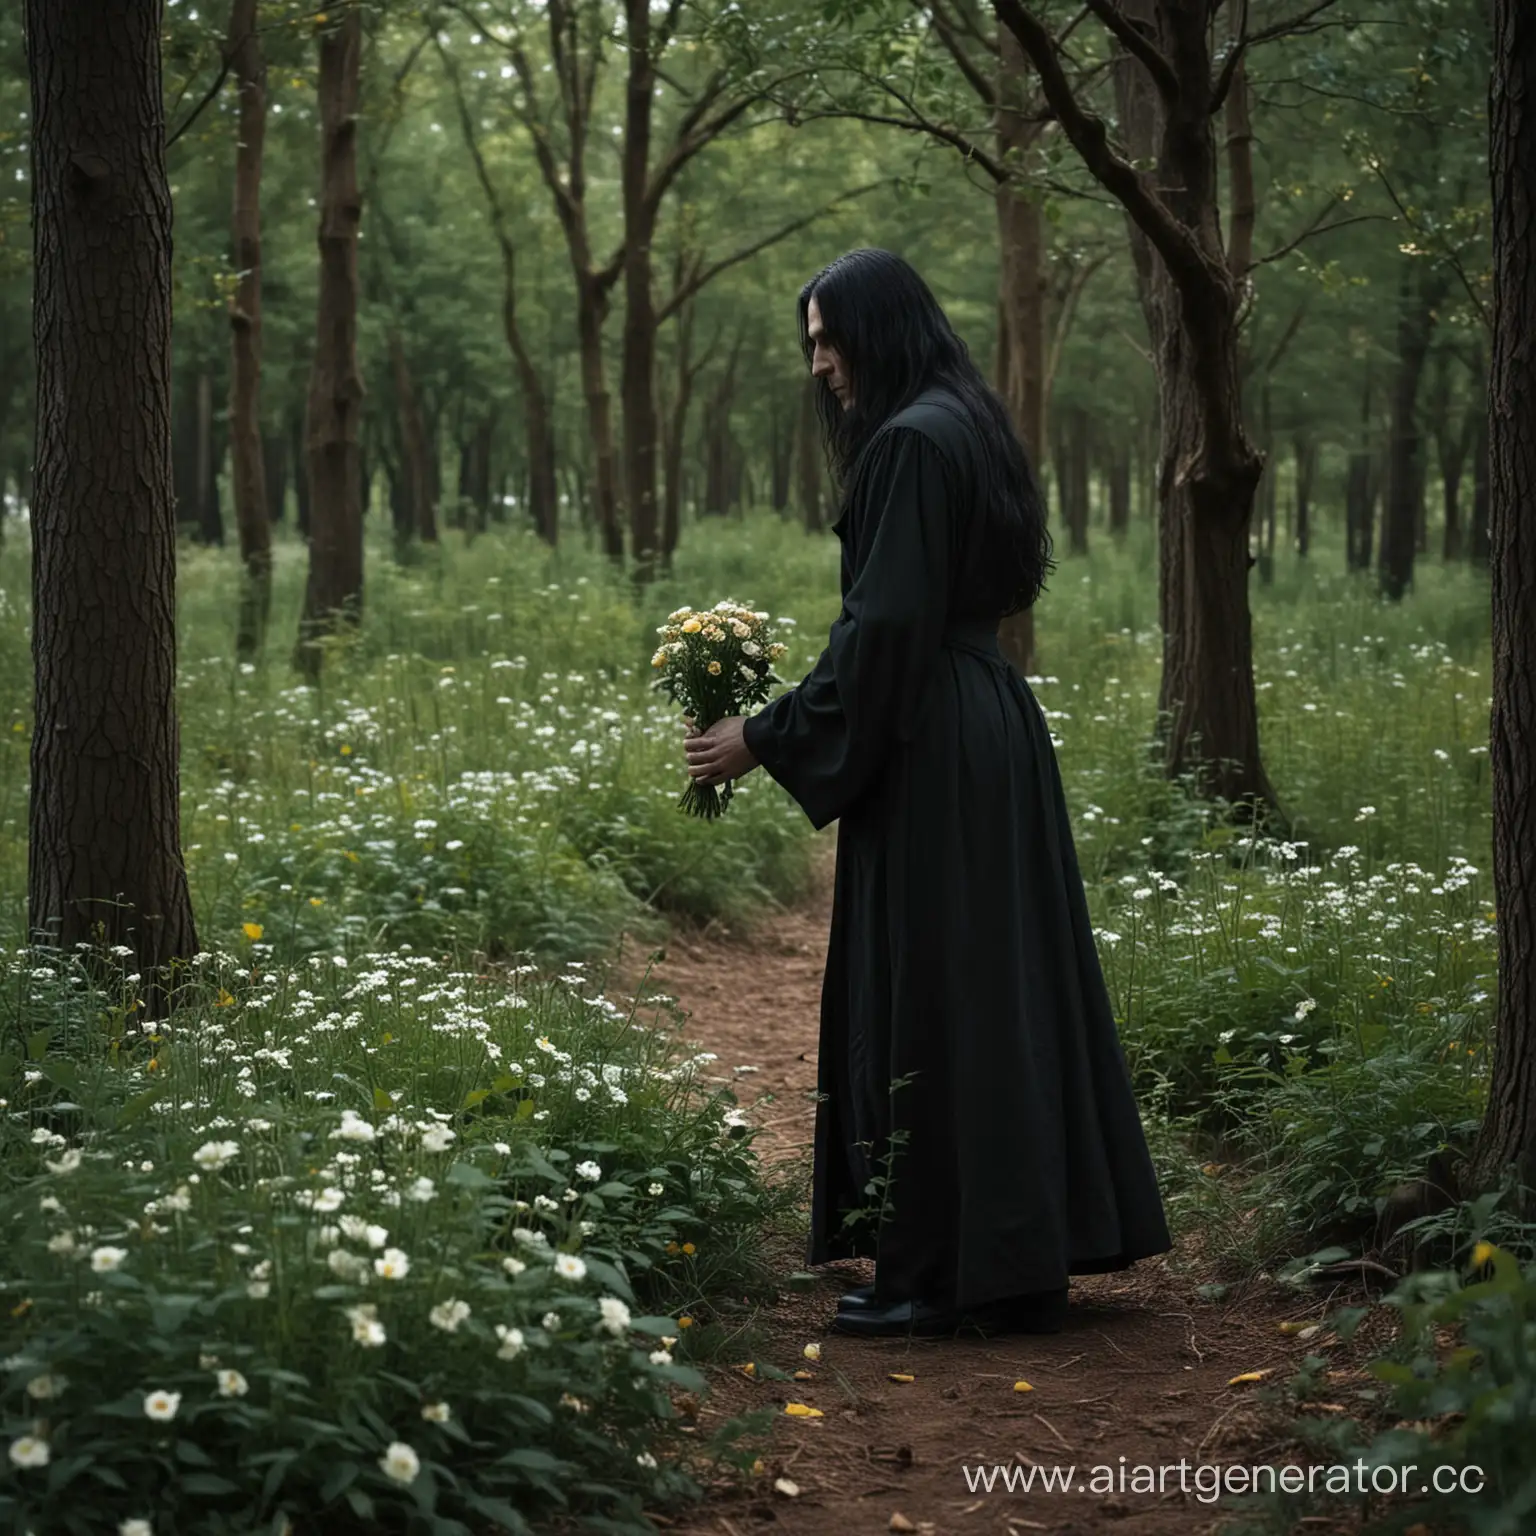 в лесу человек с длиными чеными волосами в черной одежде собирает цветы в тени деревьев, внешность как у северуса снейпа